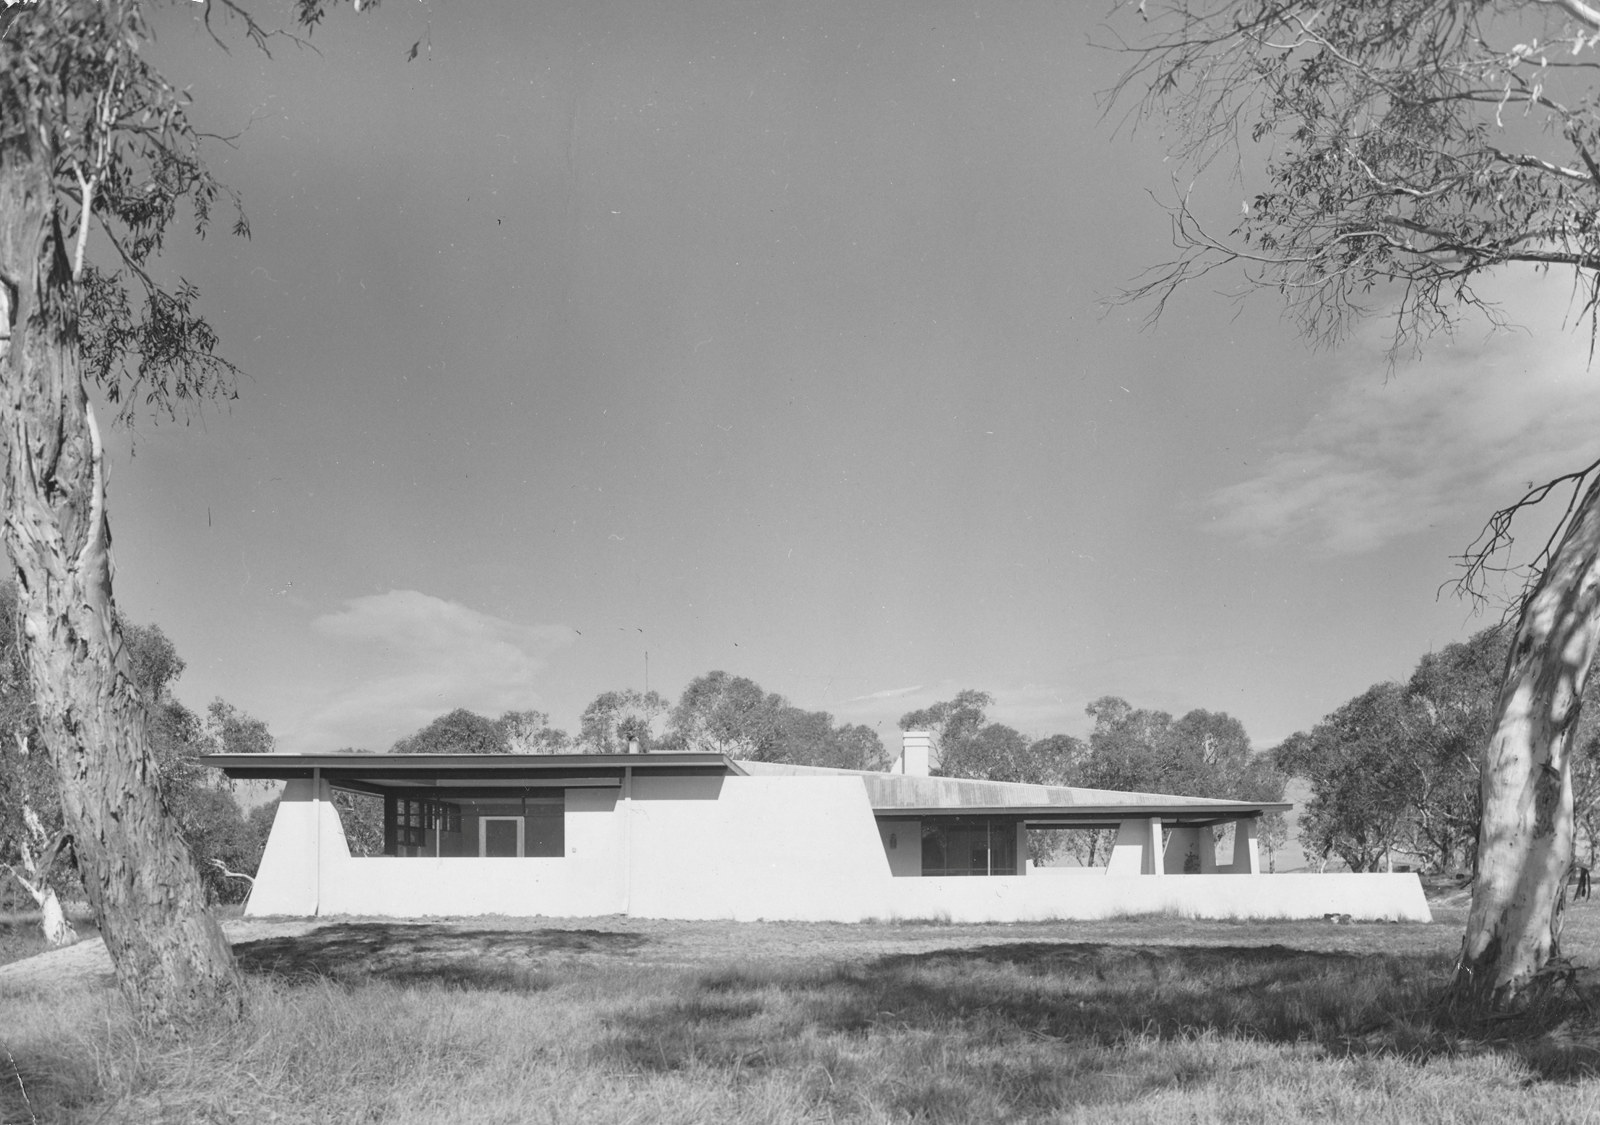 The house Currandooley, 1961. Enrico Taglietti architect.